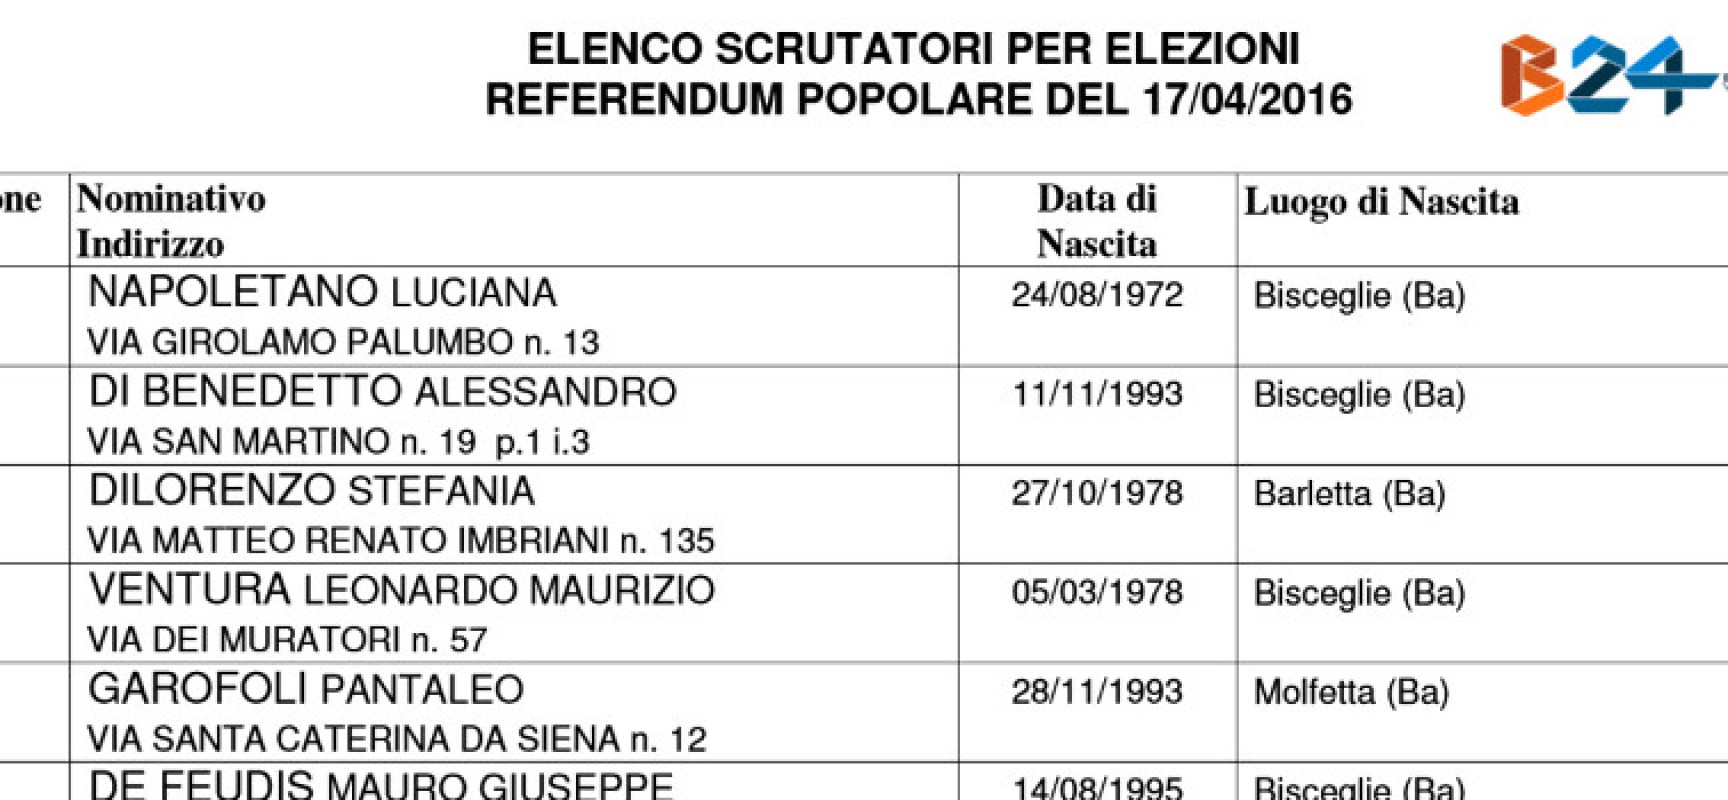 Referendum del 17 aprile, ecco gli scrutatori sorteggiati /ELENCO